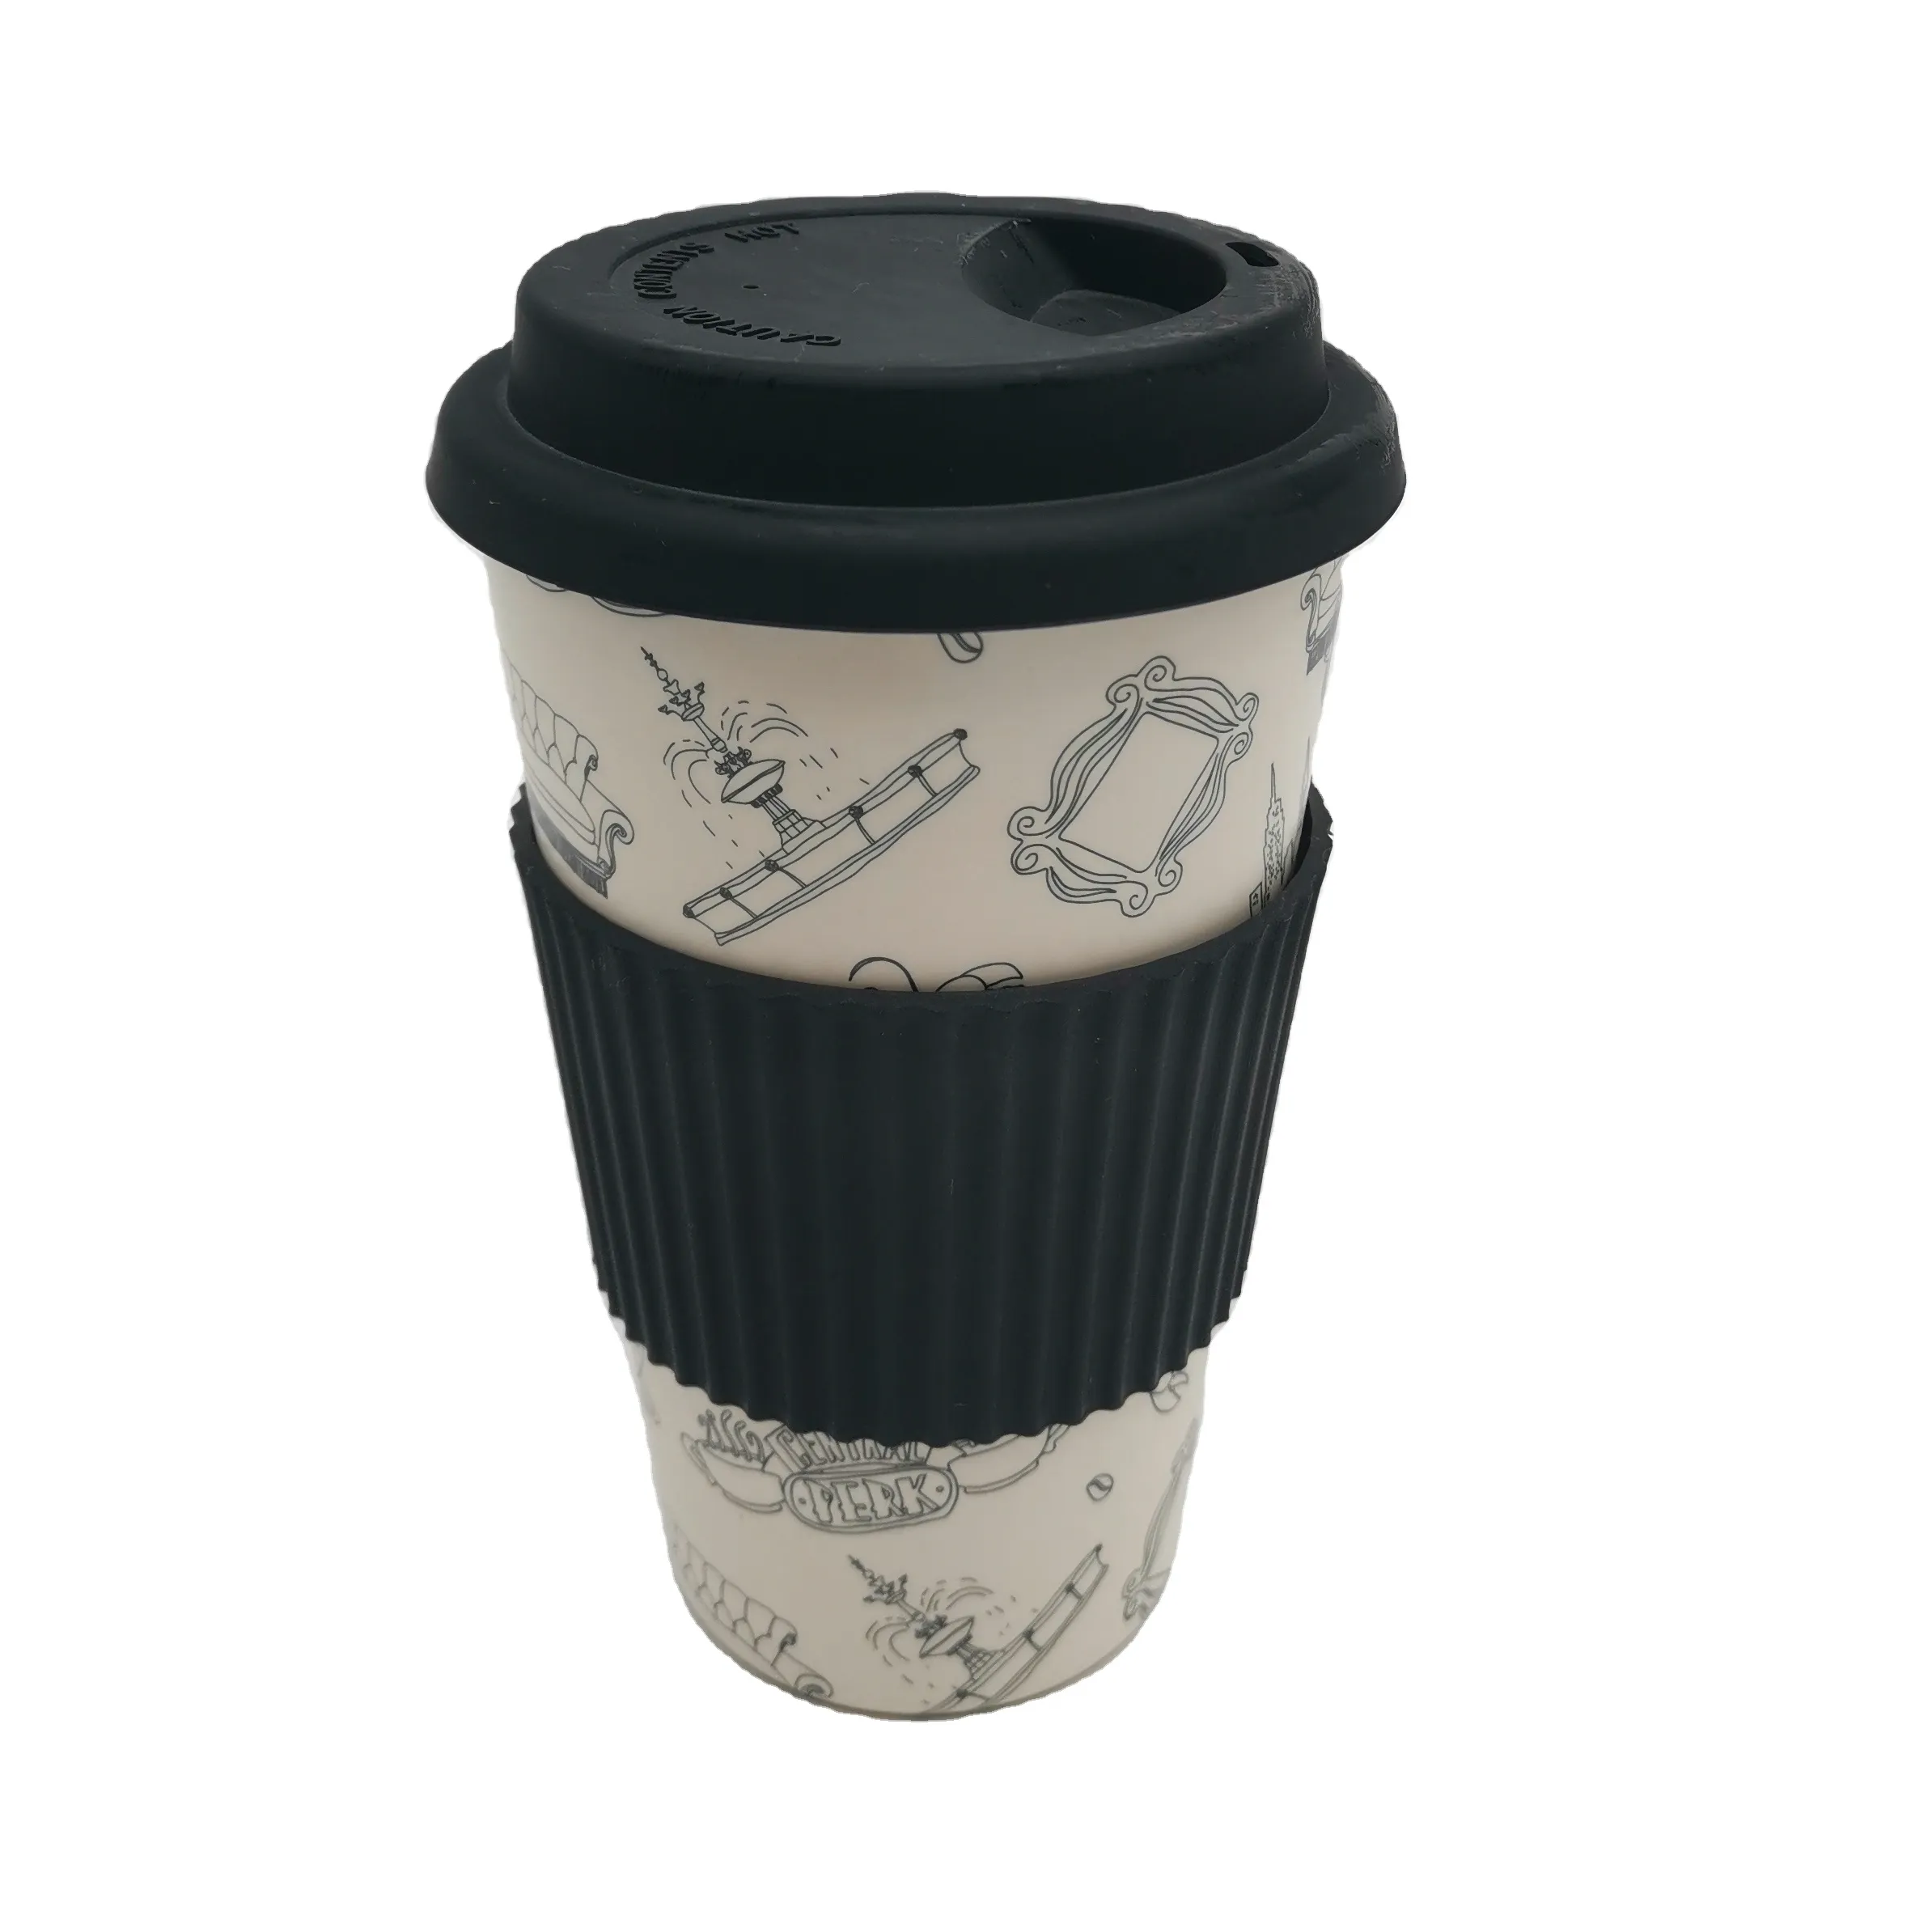 אקו קפה אורגני במבוק סיב לשימוש חוזר קפה כוס עם מכסה במבוק 450ml